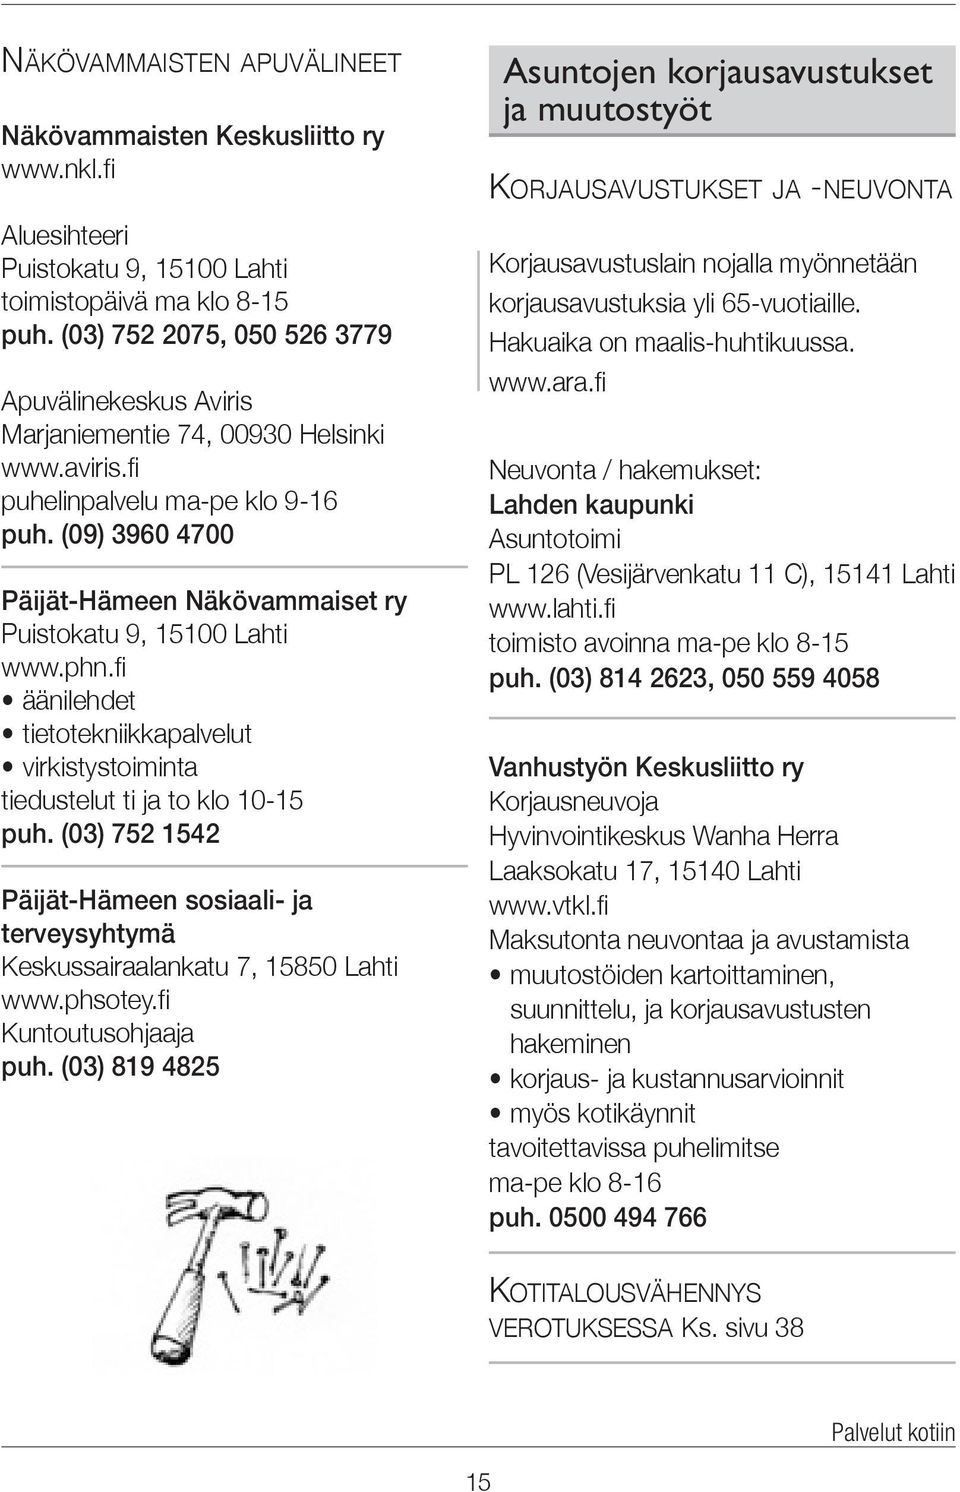 (09) 3960 4700 Päijät-Hämeen Näkövammaiset ry Puistokatu 9, 15100 Lahti www.phn.fi äänilehdet tietotekniikkapalvelut virkistystoiminta tiedustelut ti ja to klo 10-15 puh.